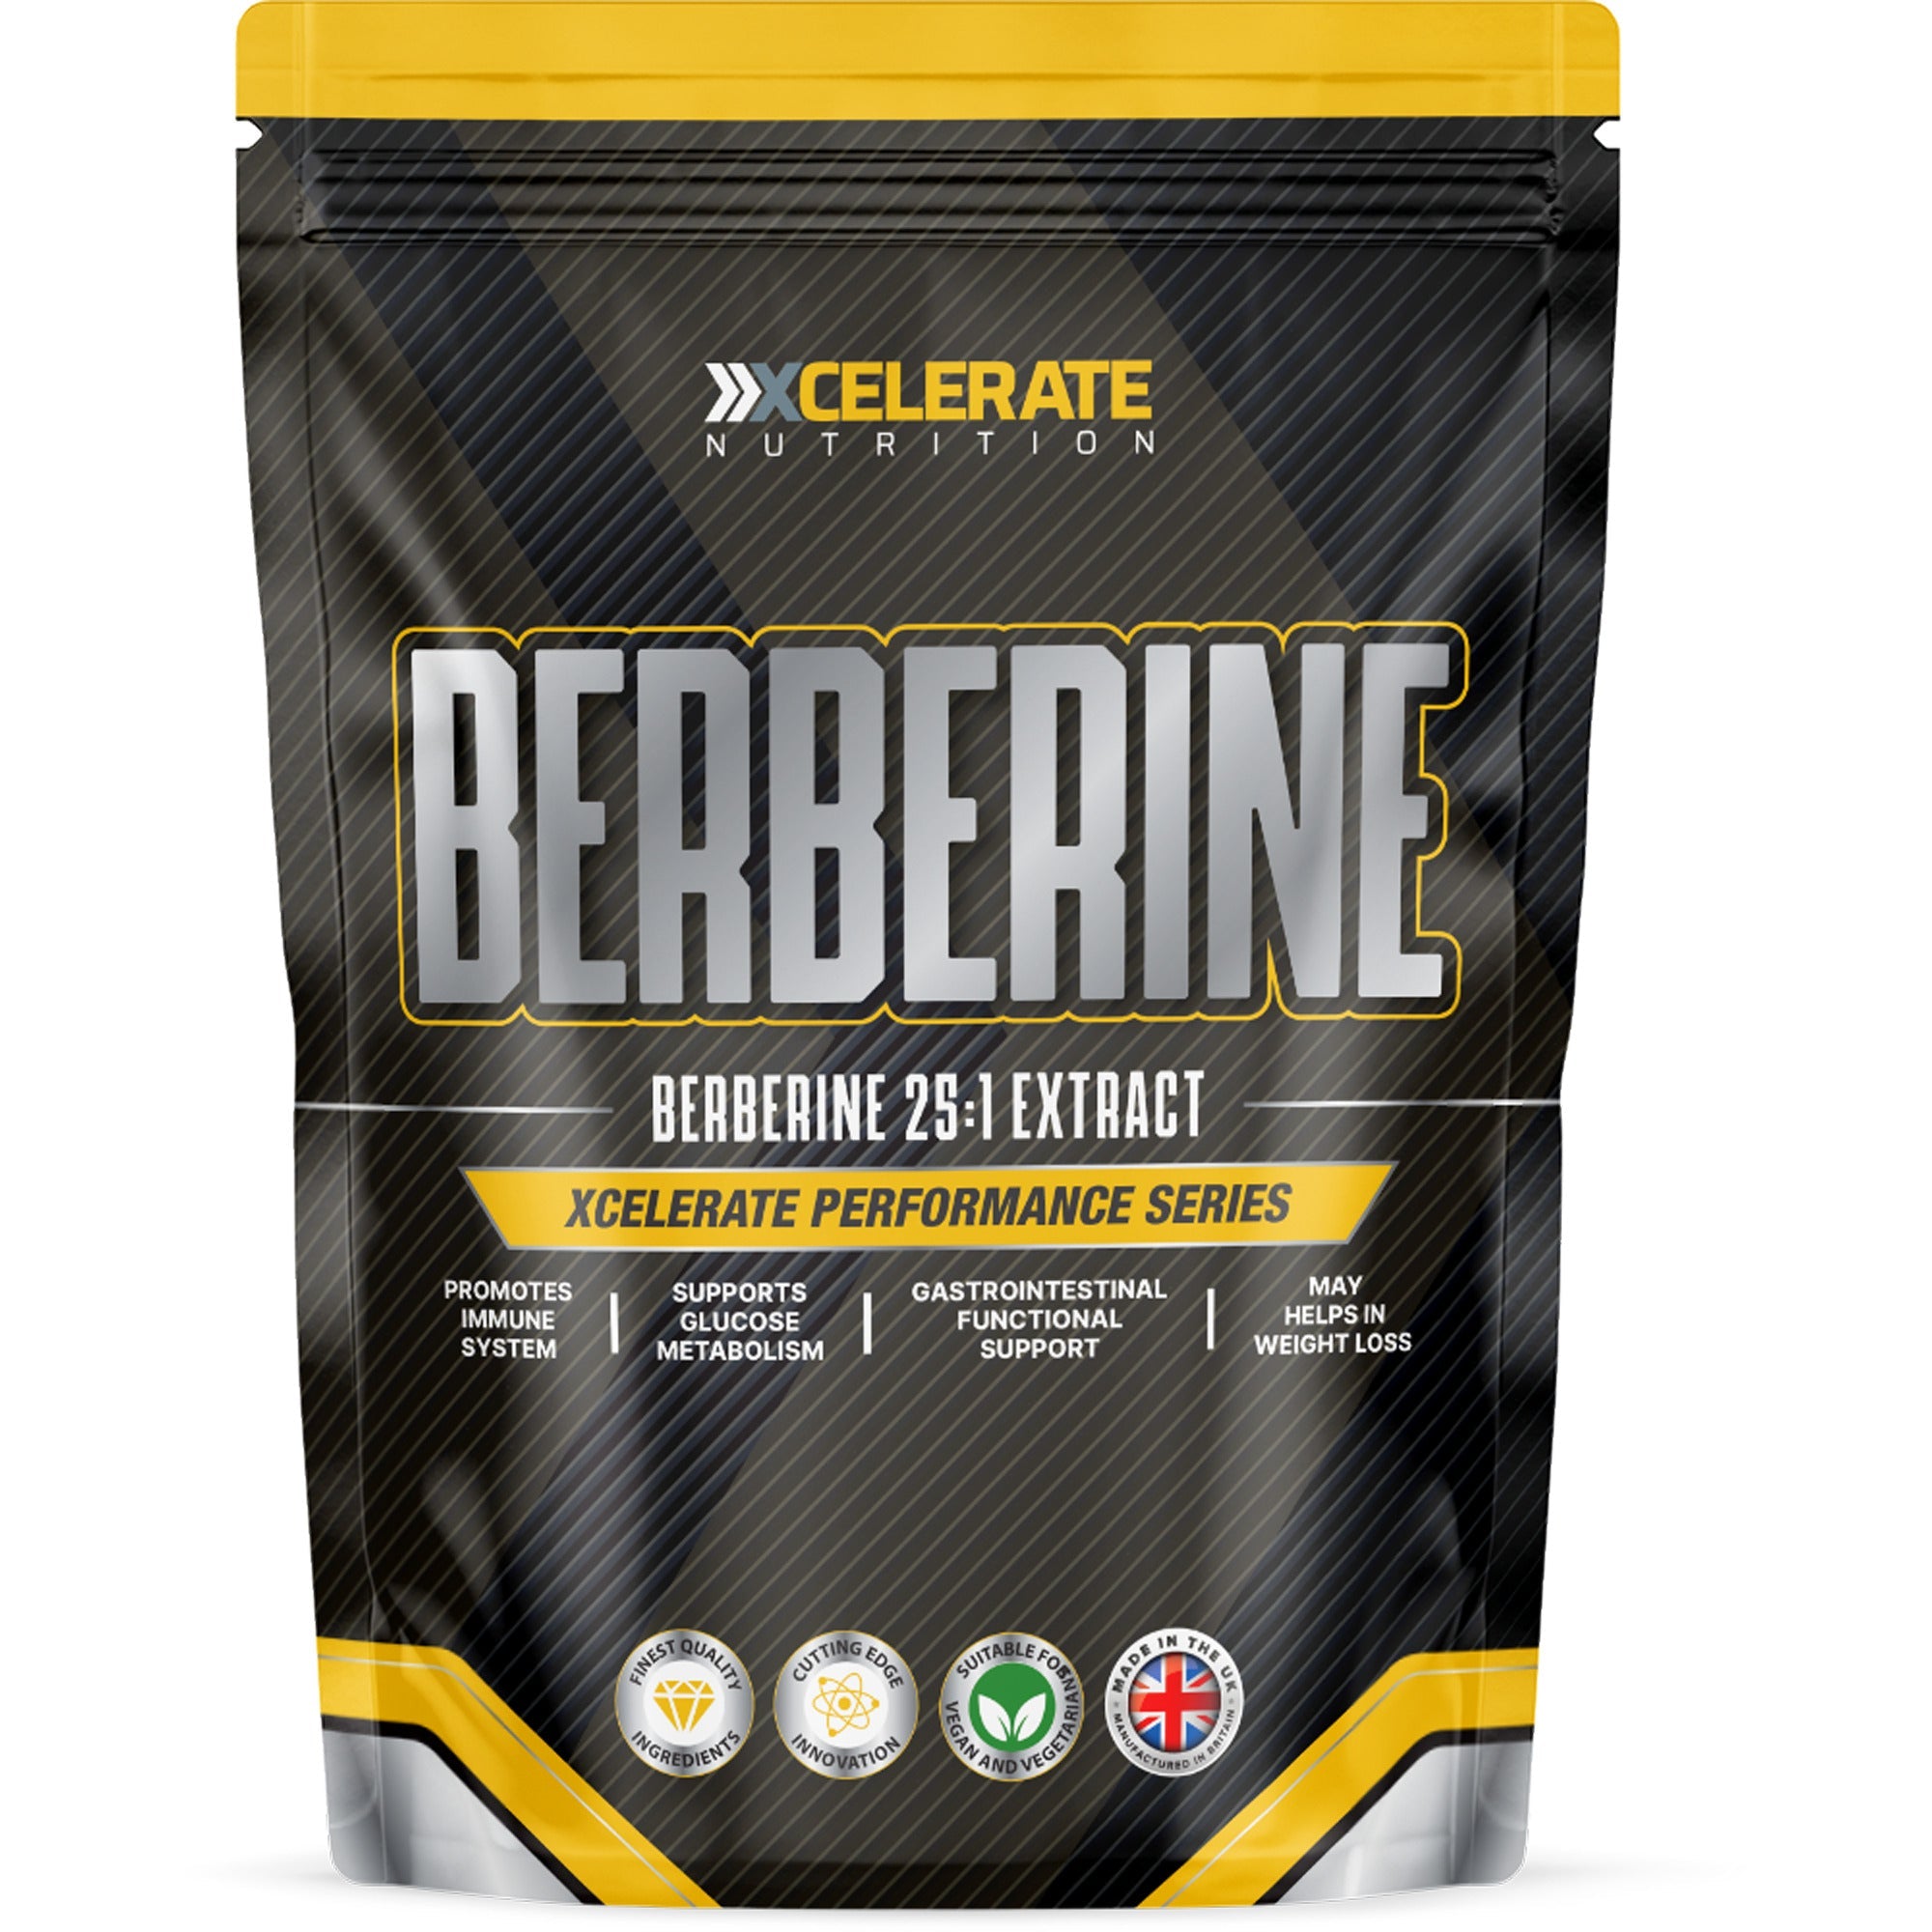 Xcelerate Berberine Capsules